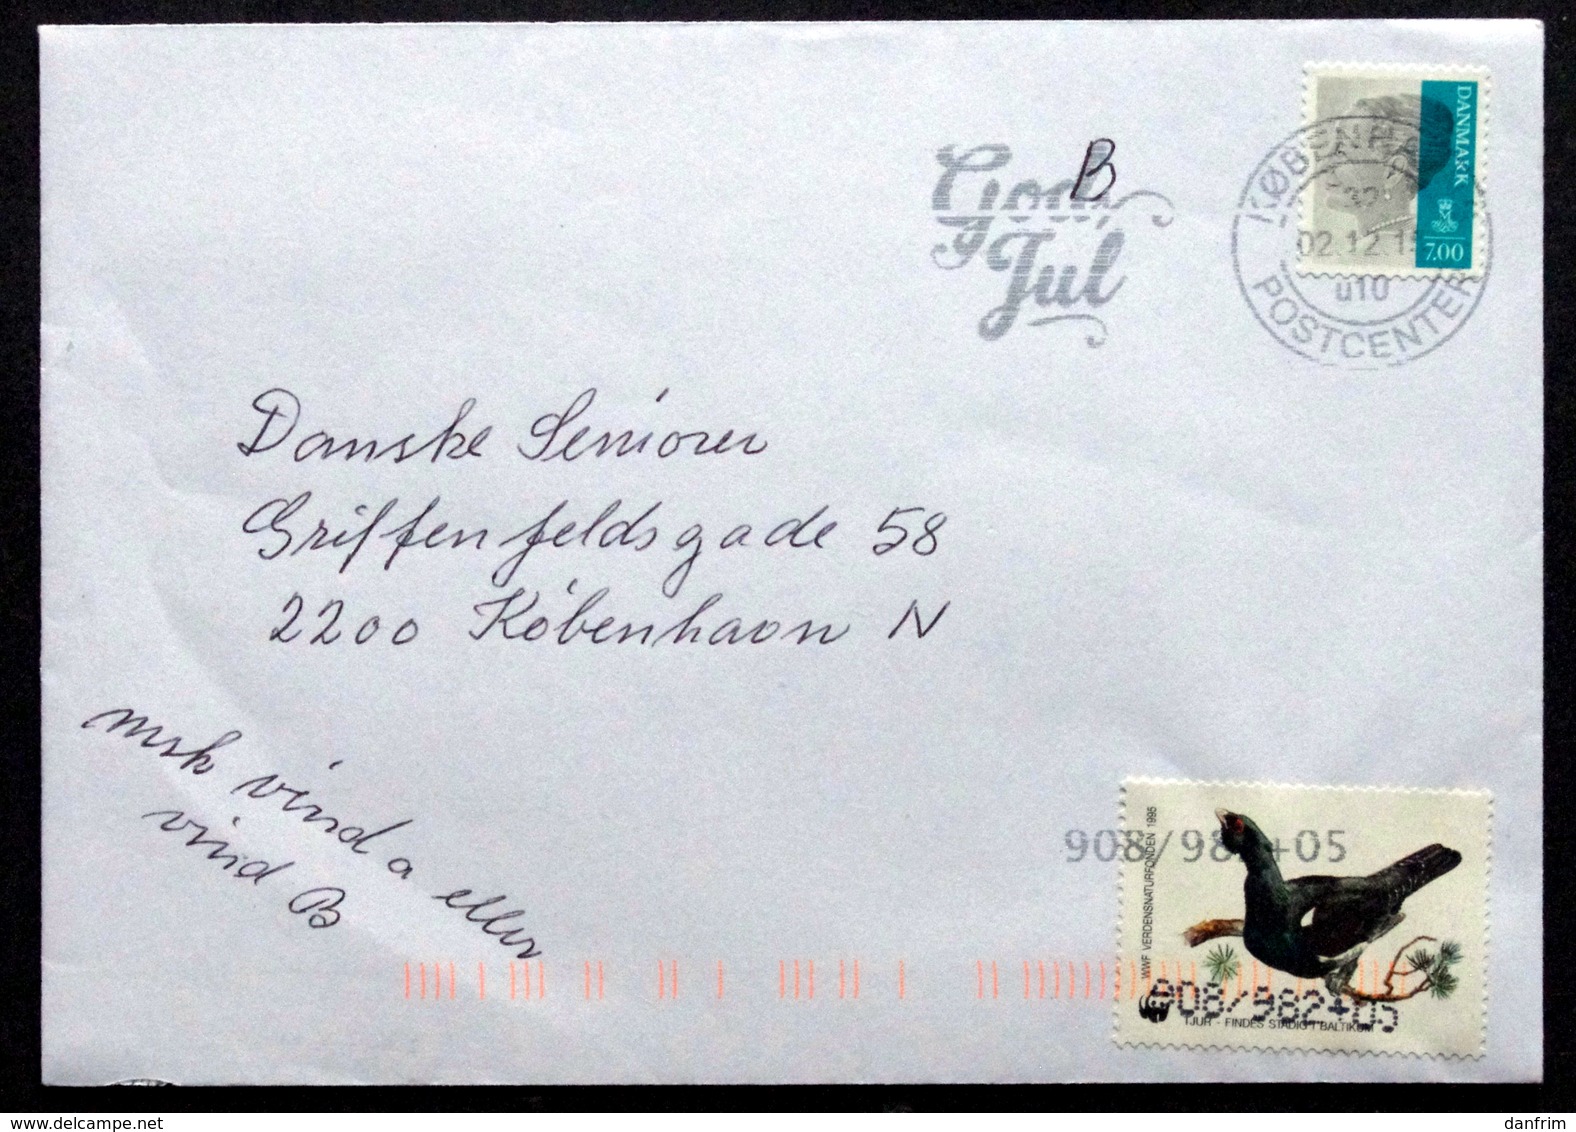 Denmark Letter 2015  Minr. 1804 I  ( Lot 6608) WWF - Lettere